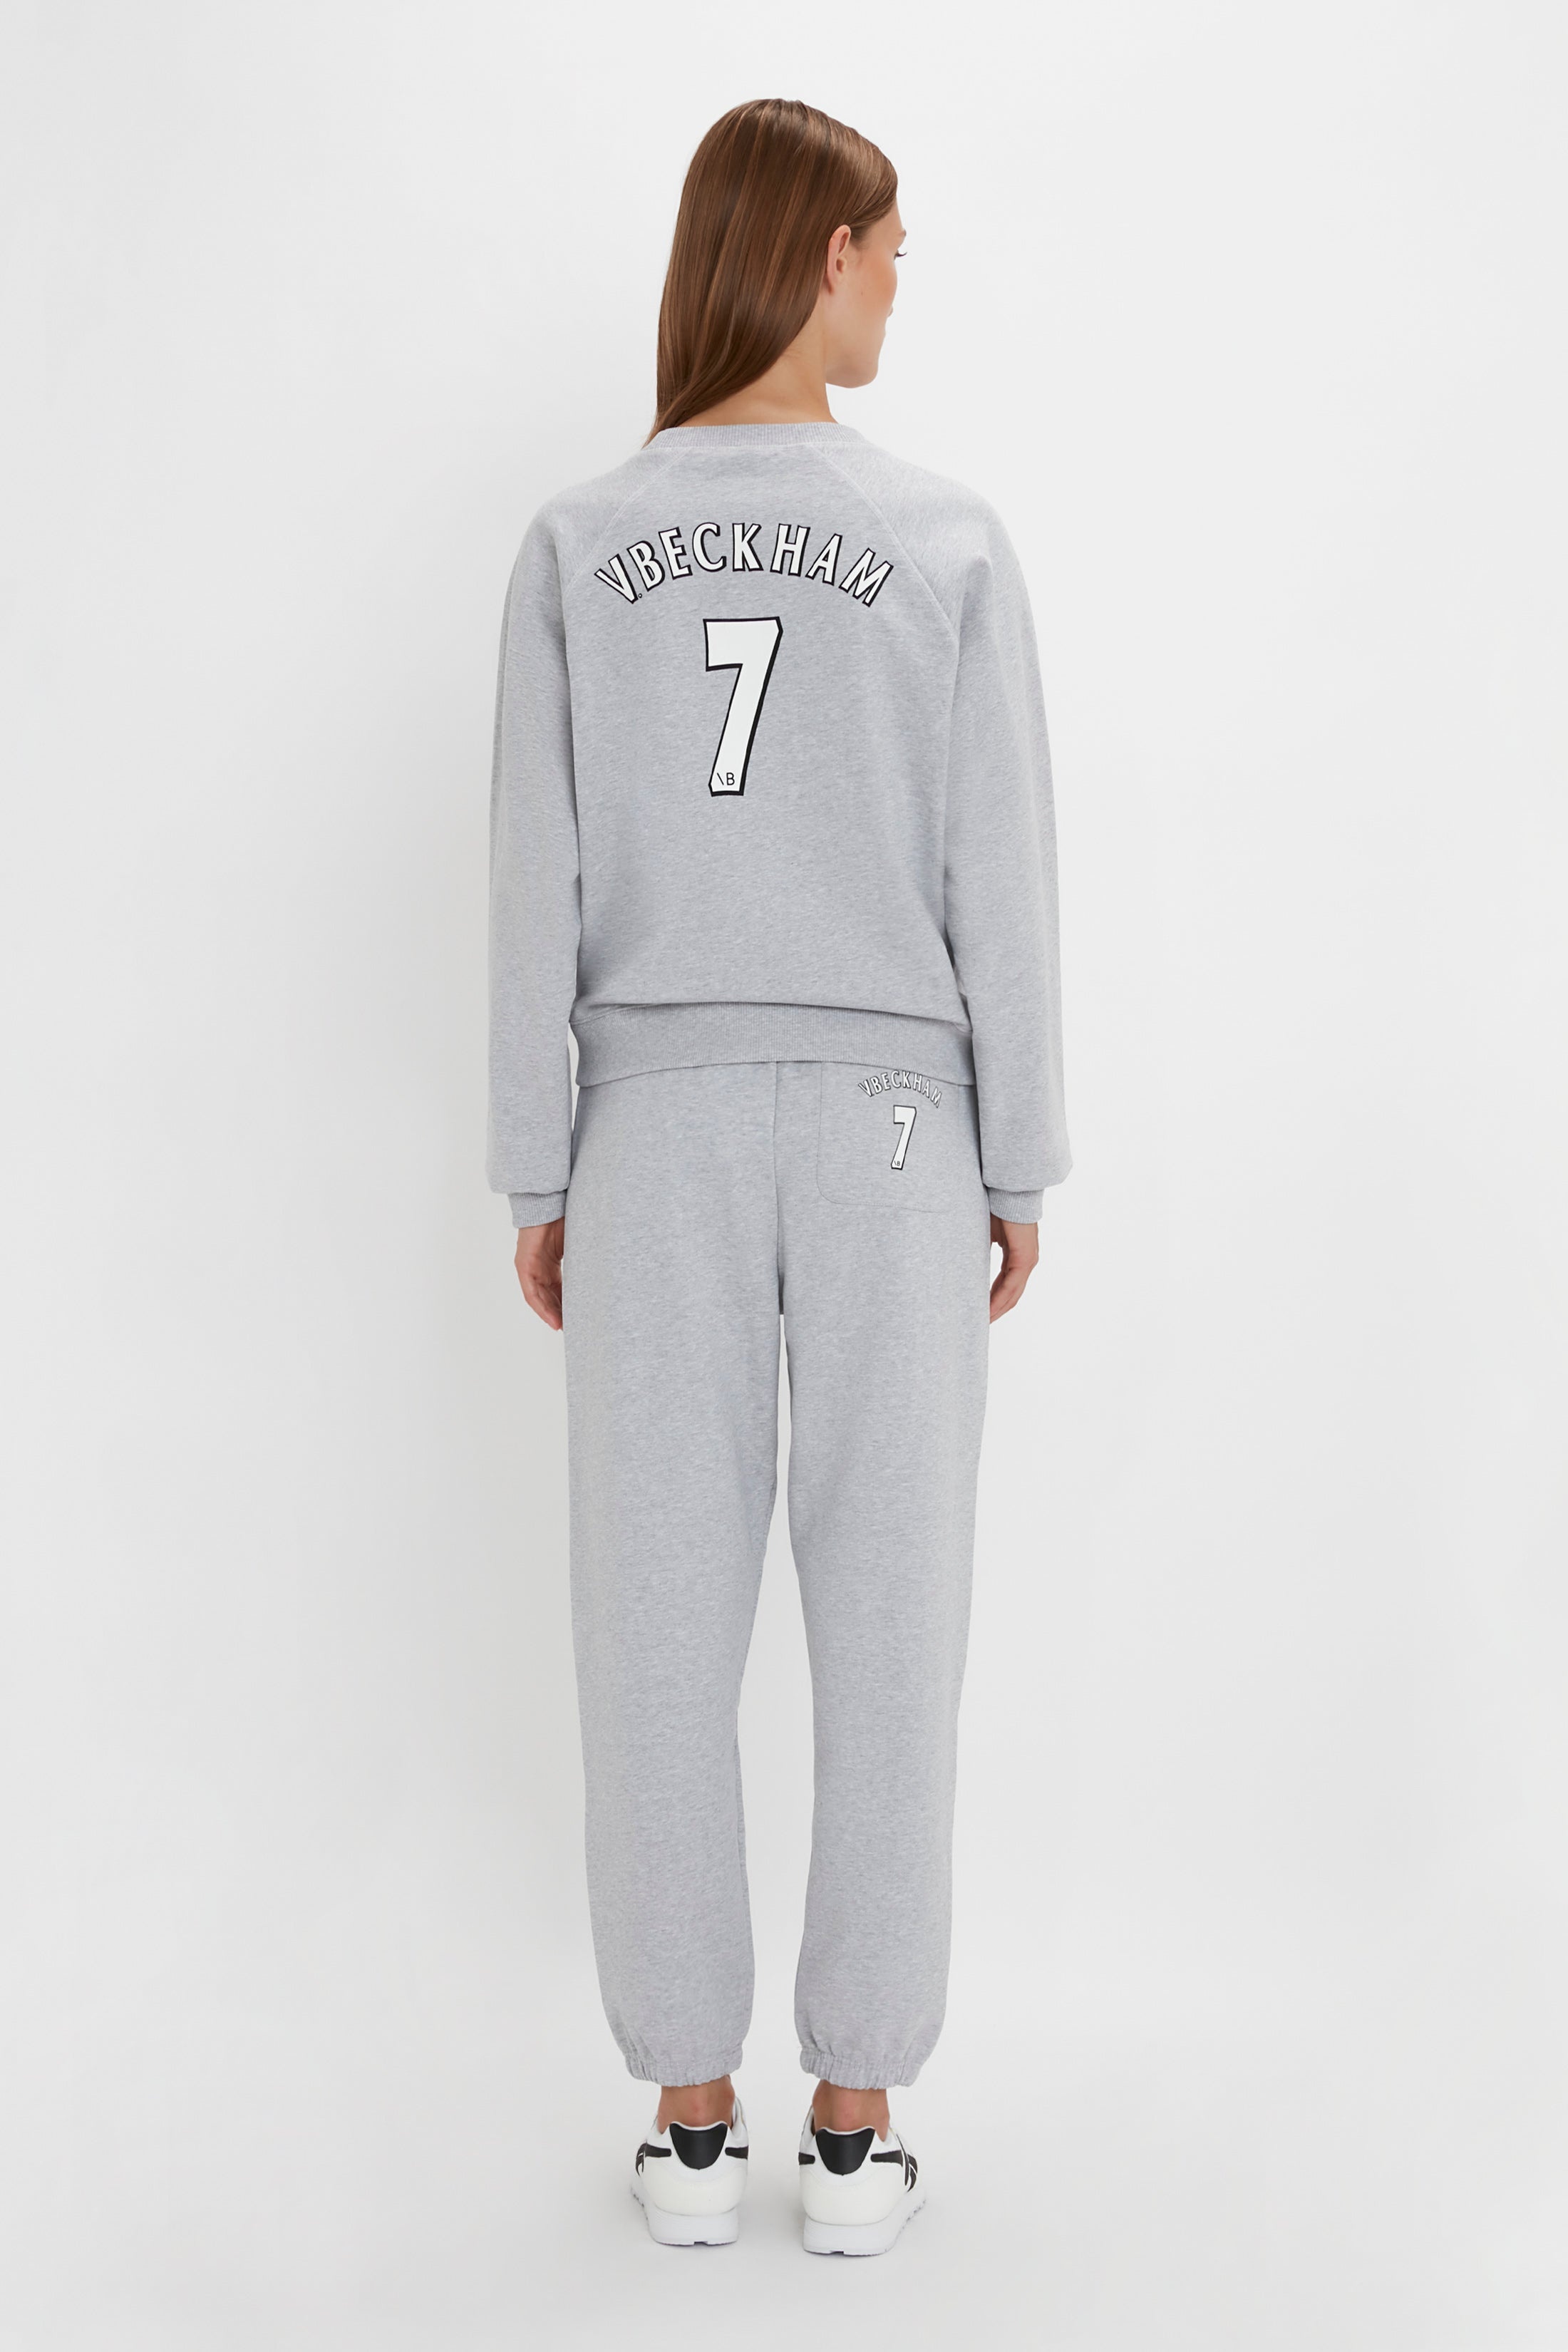 Football Sweatshirt In Grey Marl - 3